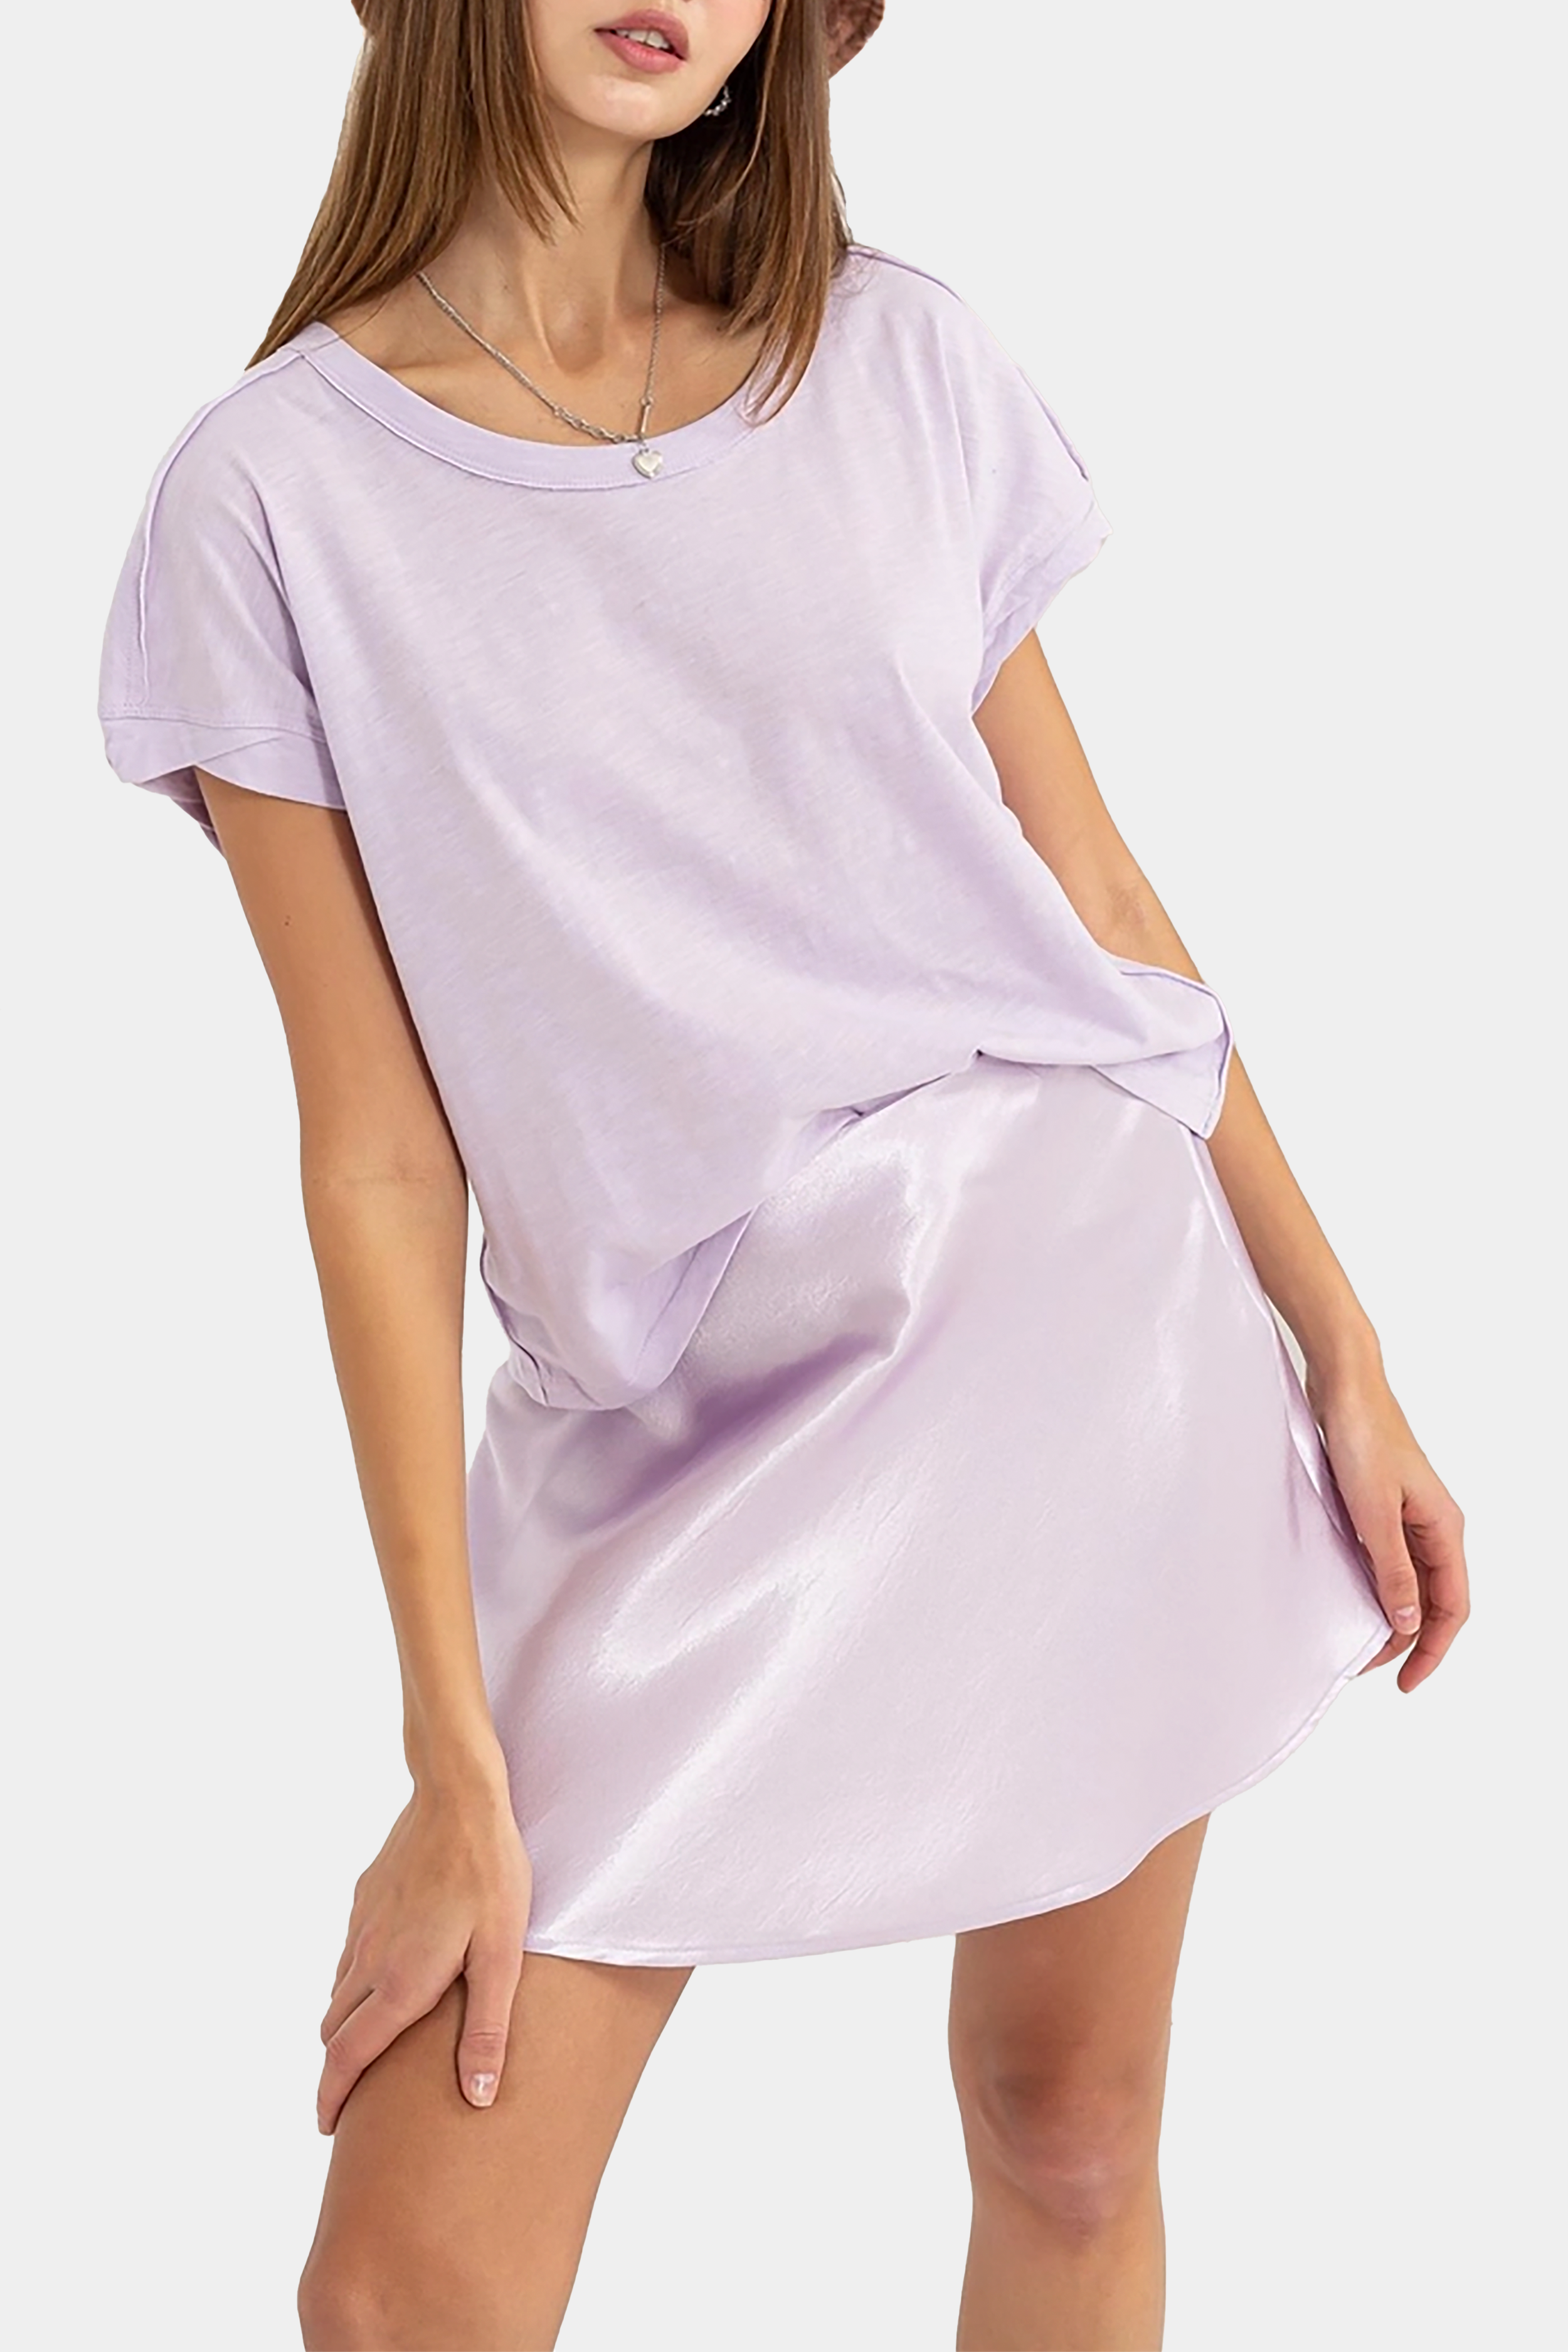 Brady Mini Skirt in Lavender